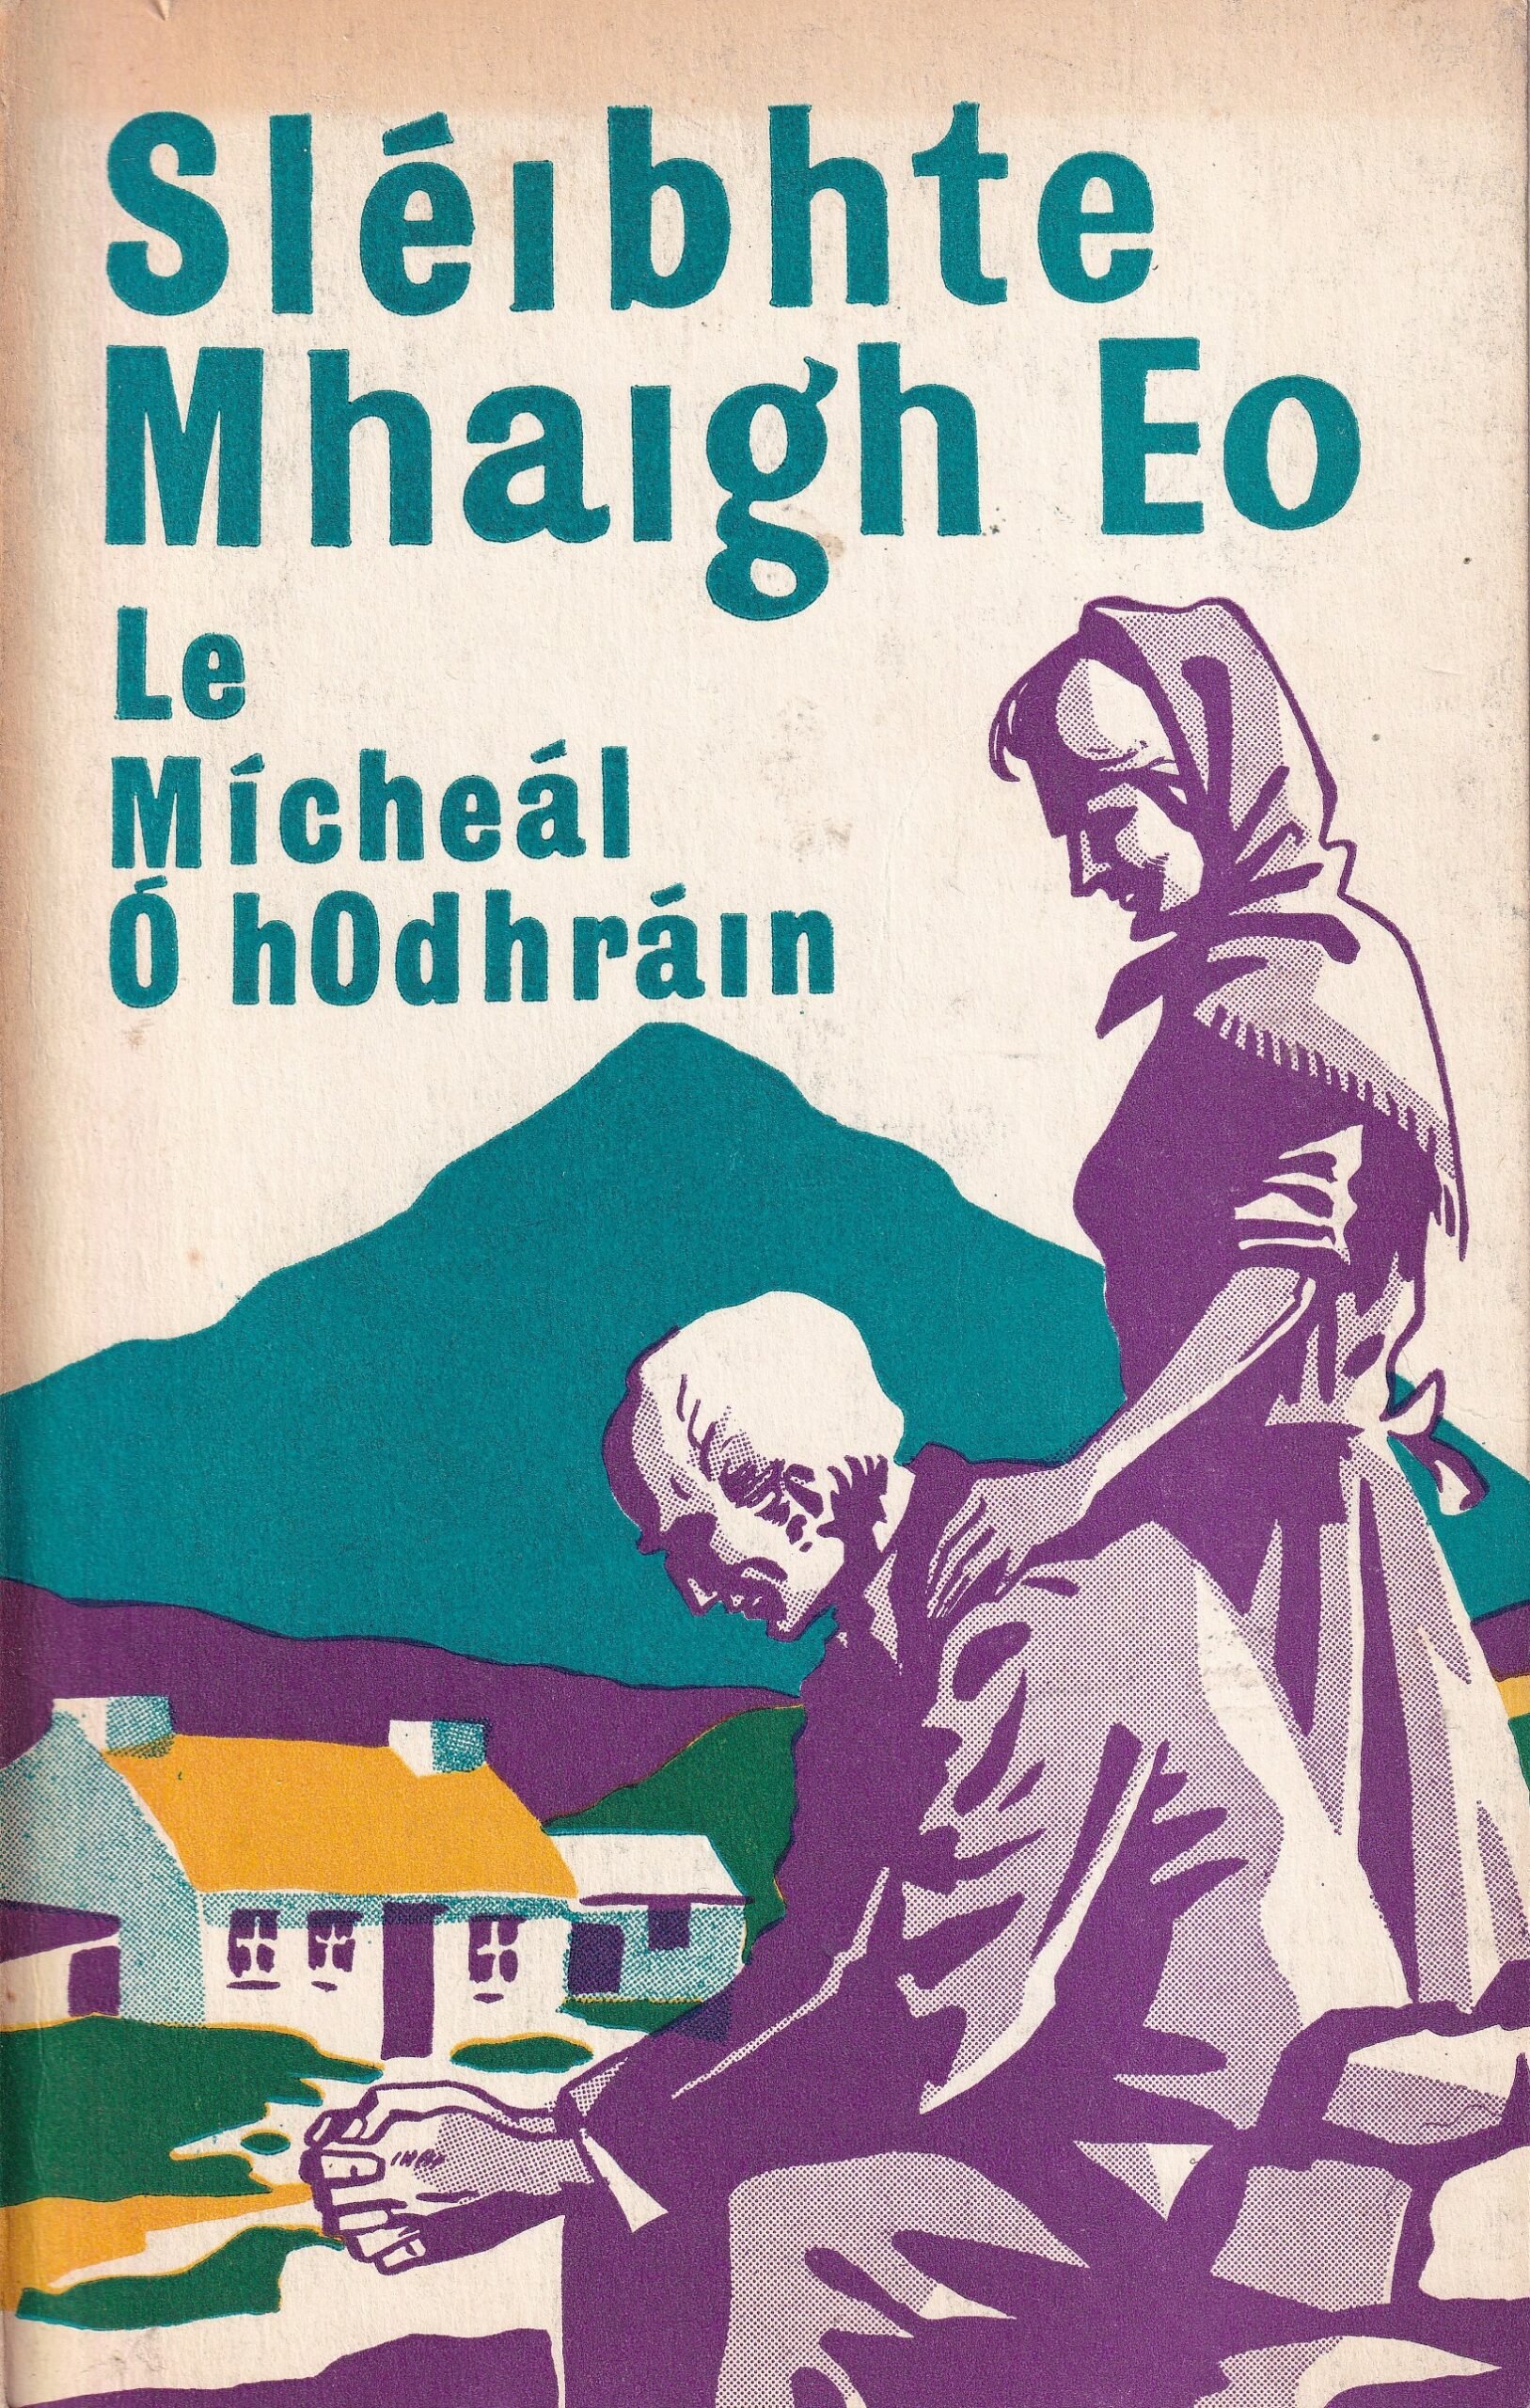 Sléibhte Mhaigh Eo by Mícheál Ó hOdhráin